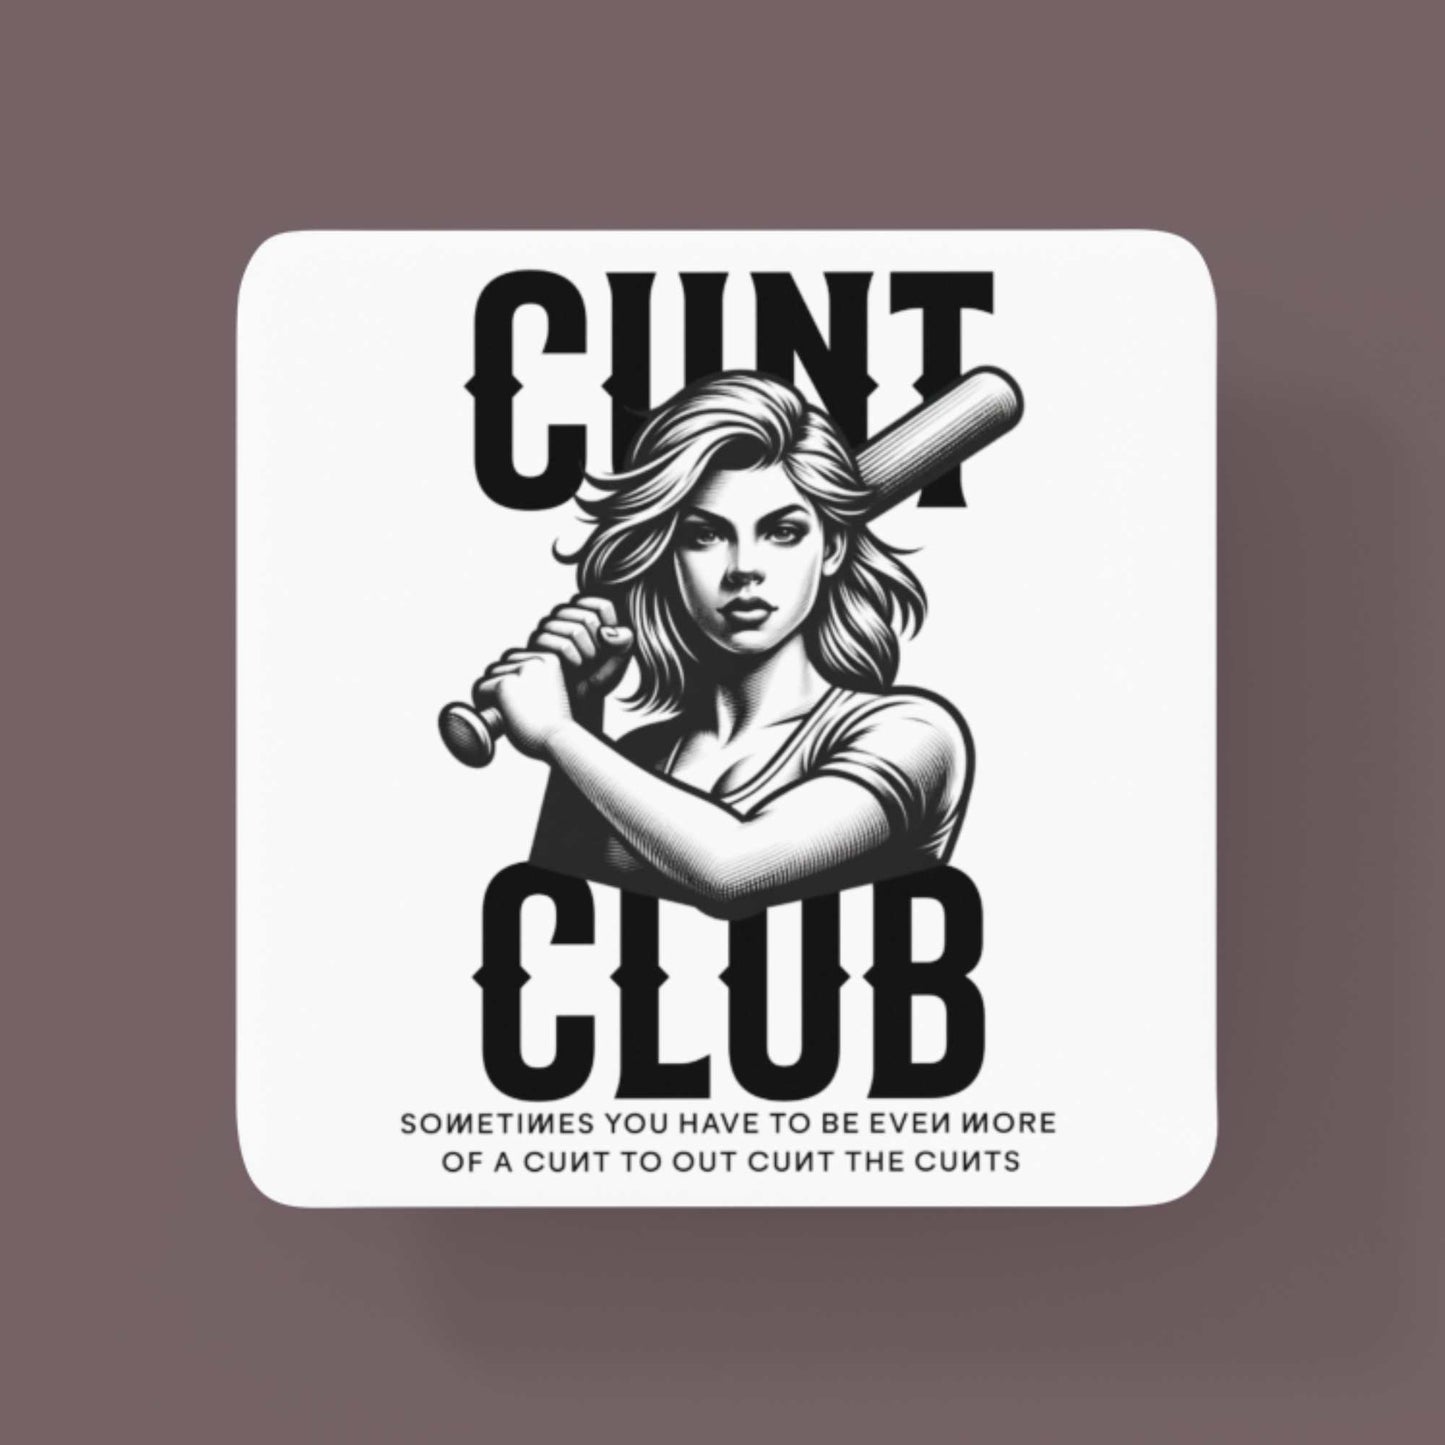 Cunt Club Funny Coffee Mug for birthday or Christmas